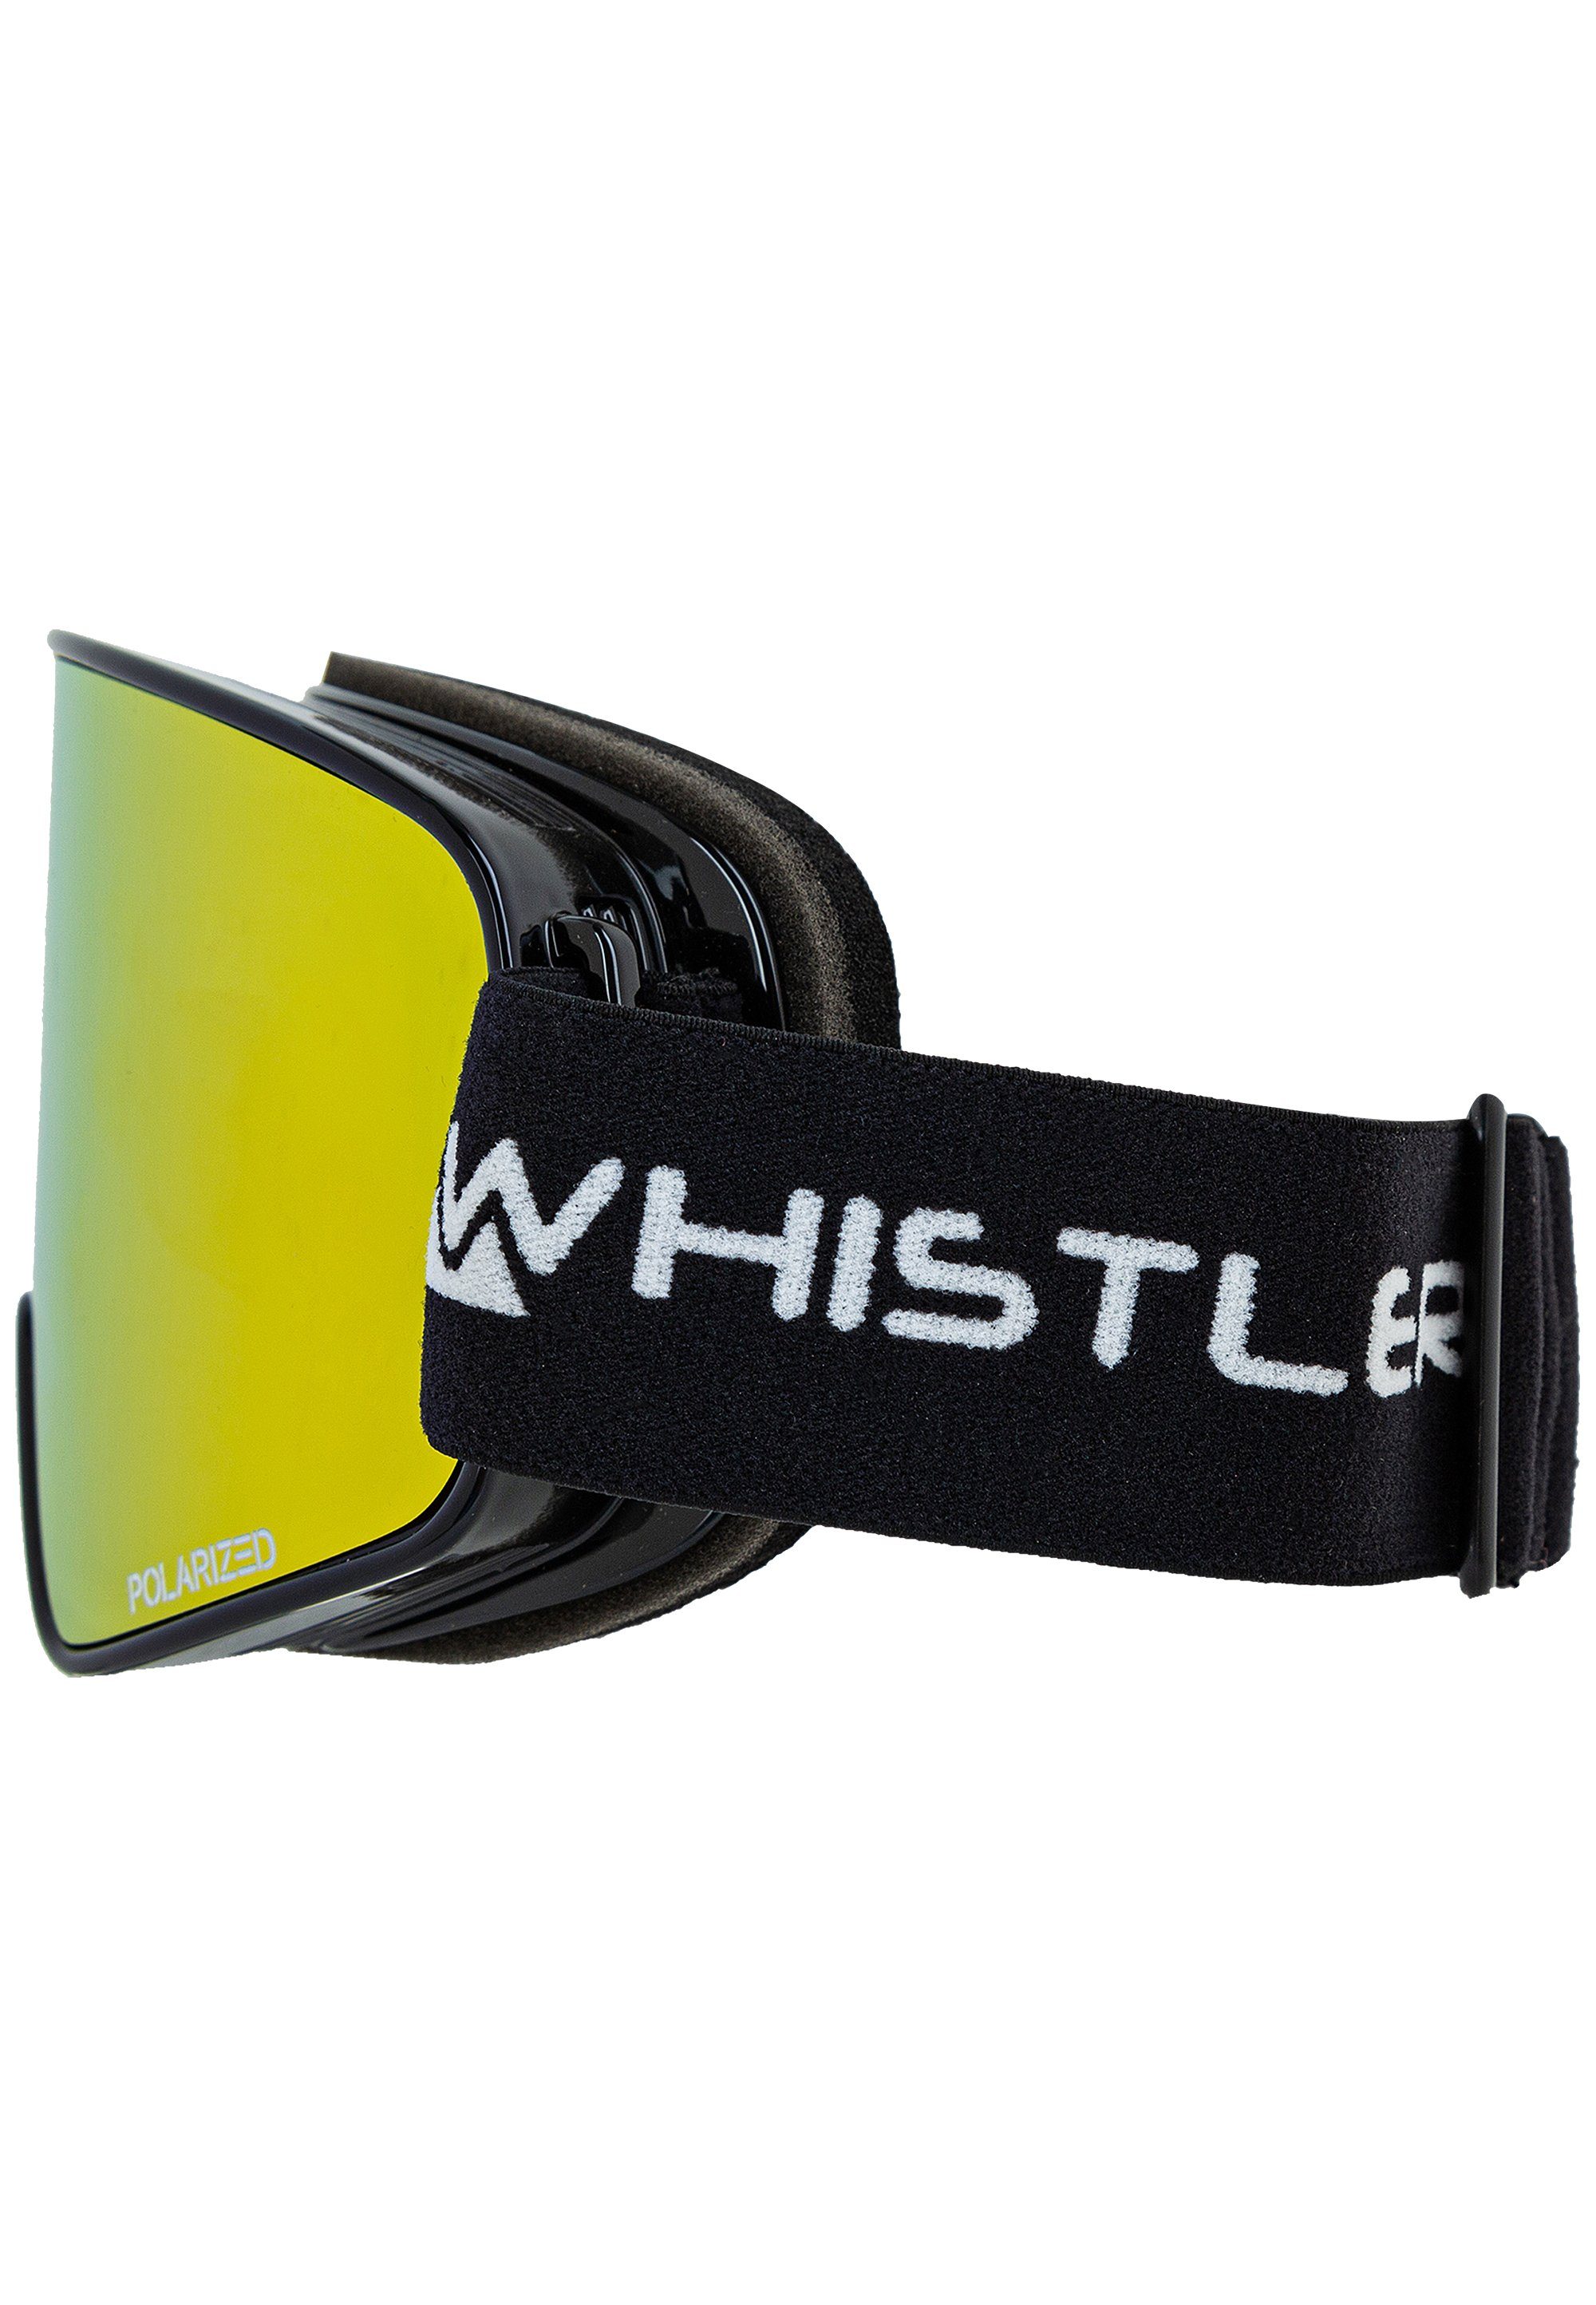 WHISTLER mit Goggle, polarisierten Ski Polarized Skibrille Sport-Gläser WS8000